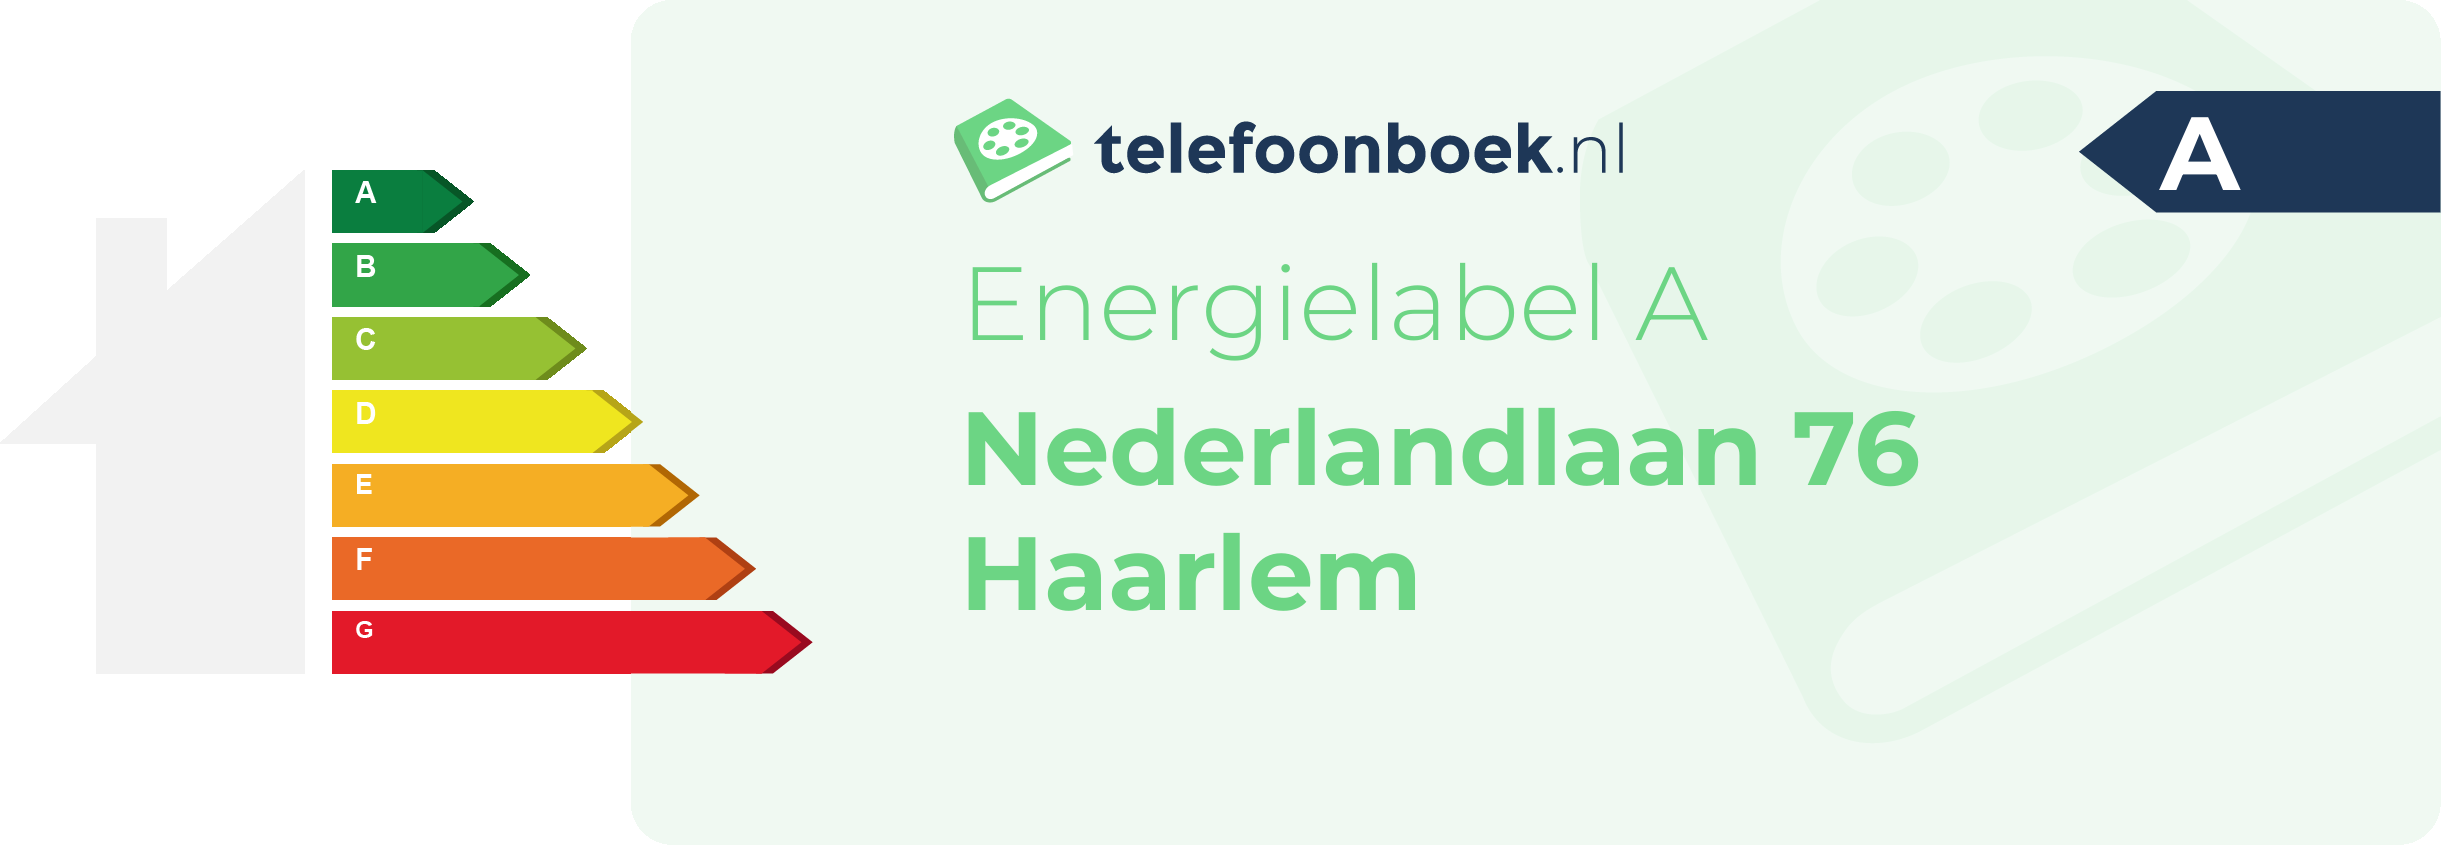 Energielabel Nederlandlaan 76 Haarlem